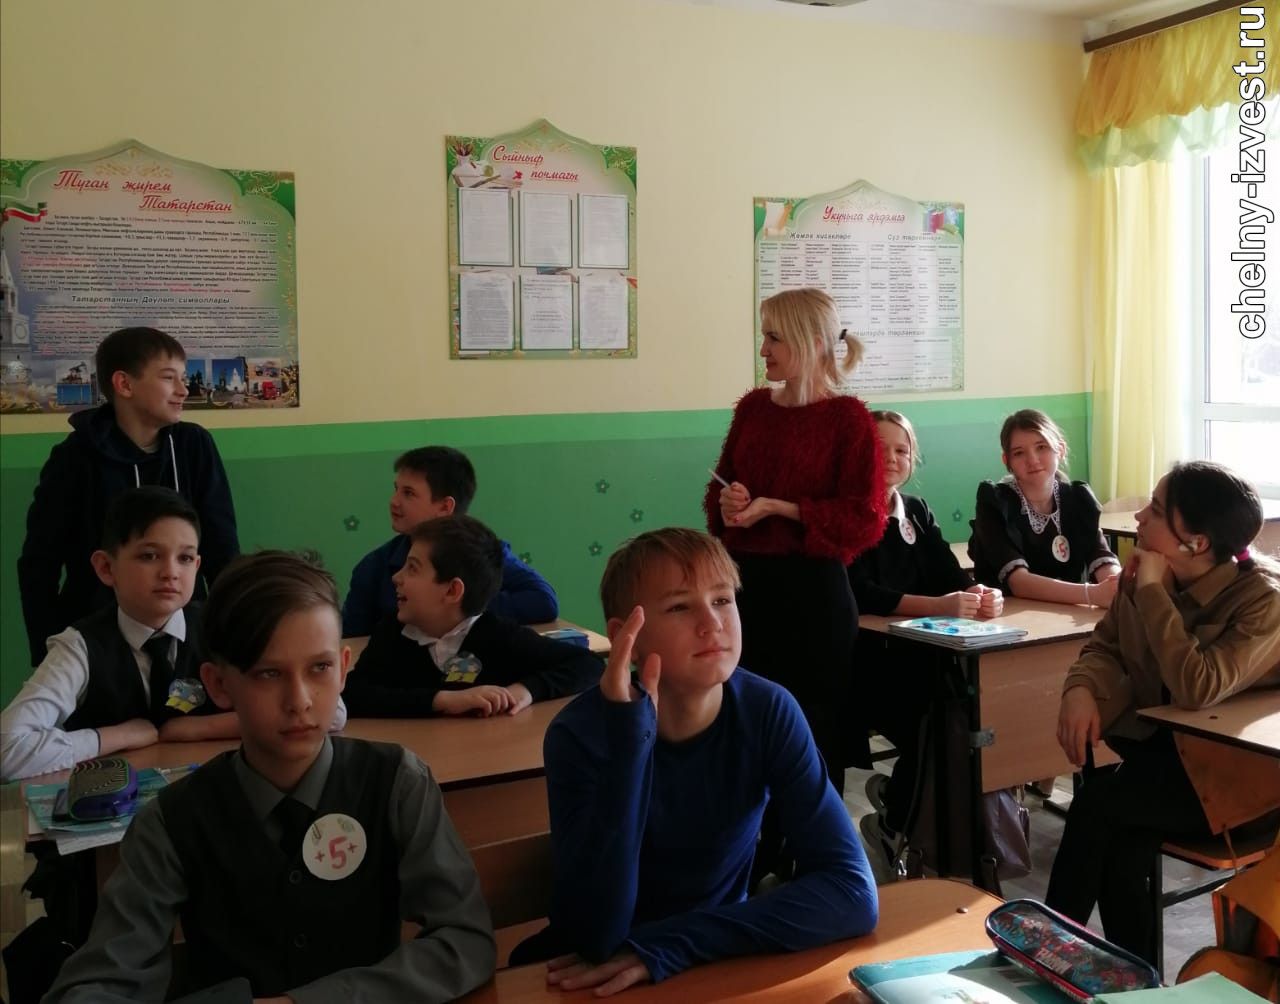 Педагог выучила татарский язык с нуля и теперь помогает русскоязычным  школьникам полюбить его